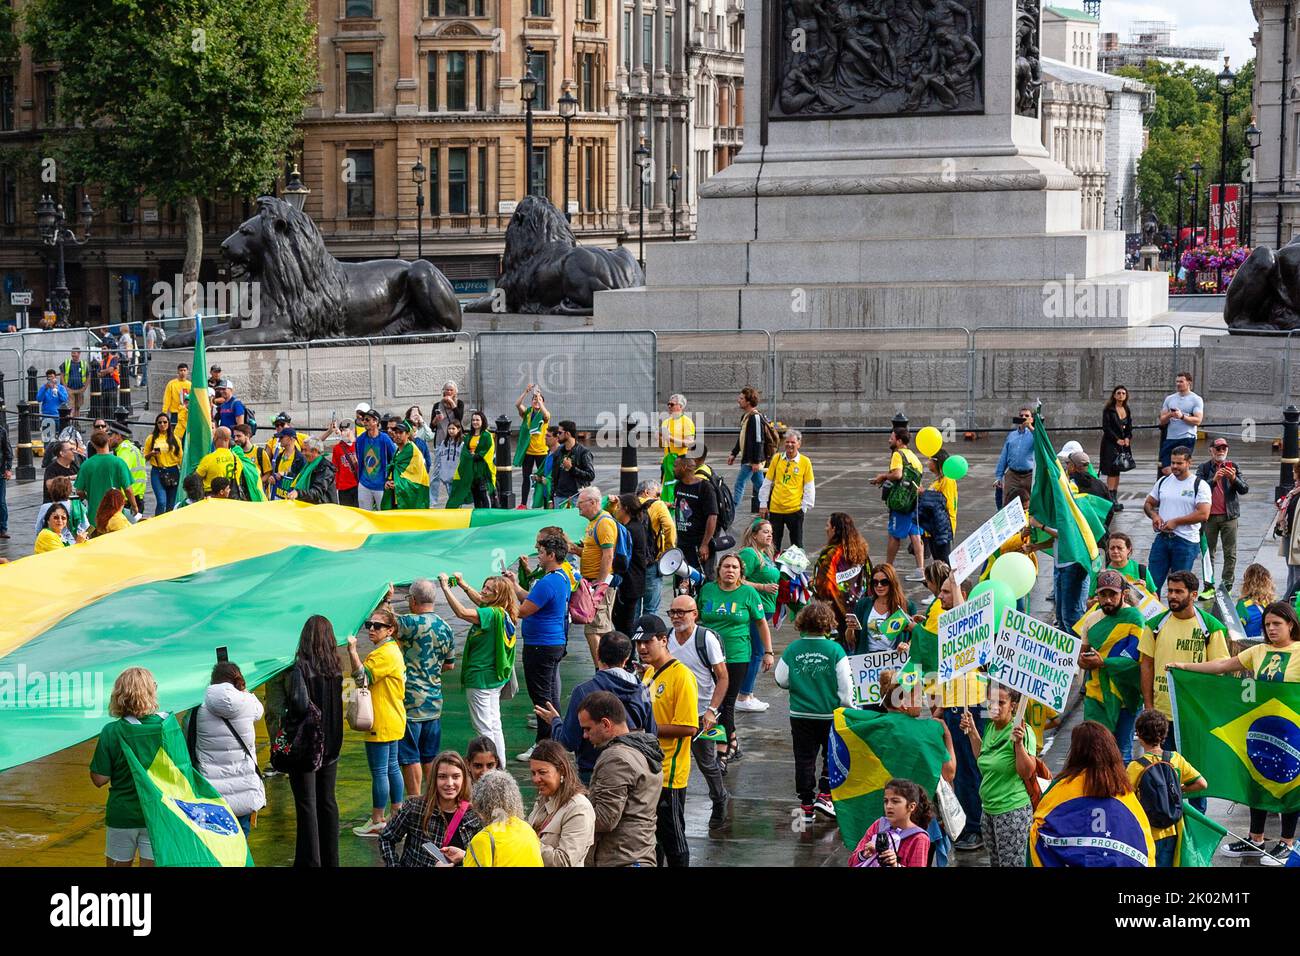 Rally a sostegno del Presidente brasiliano Generale Bolsonaro, Trafalgar Square, Londra 2022 settembre Foto Stock